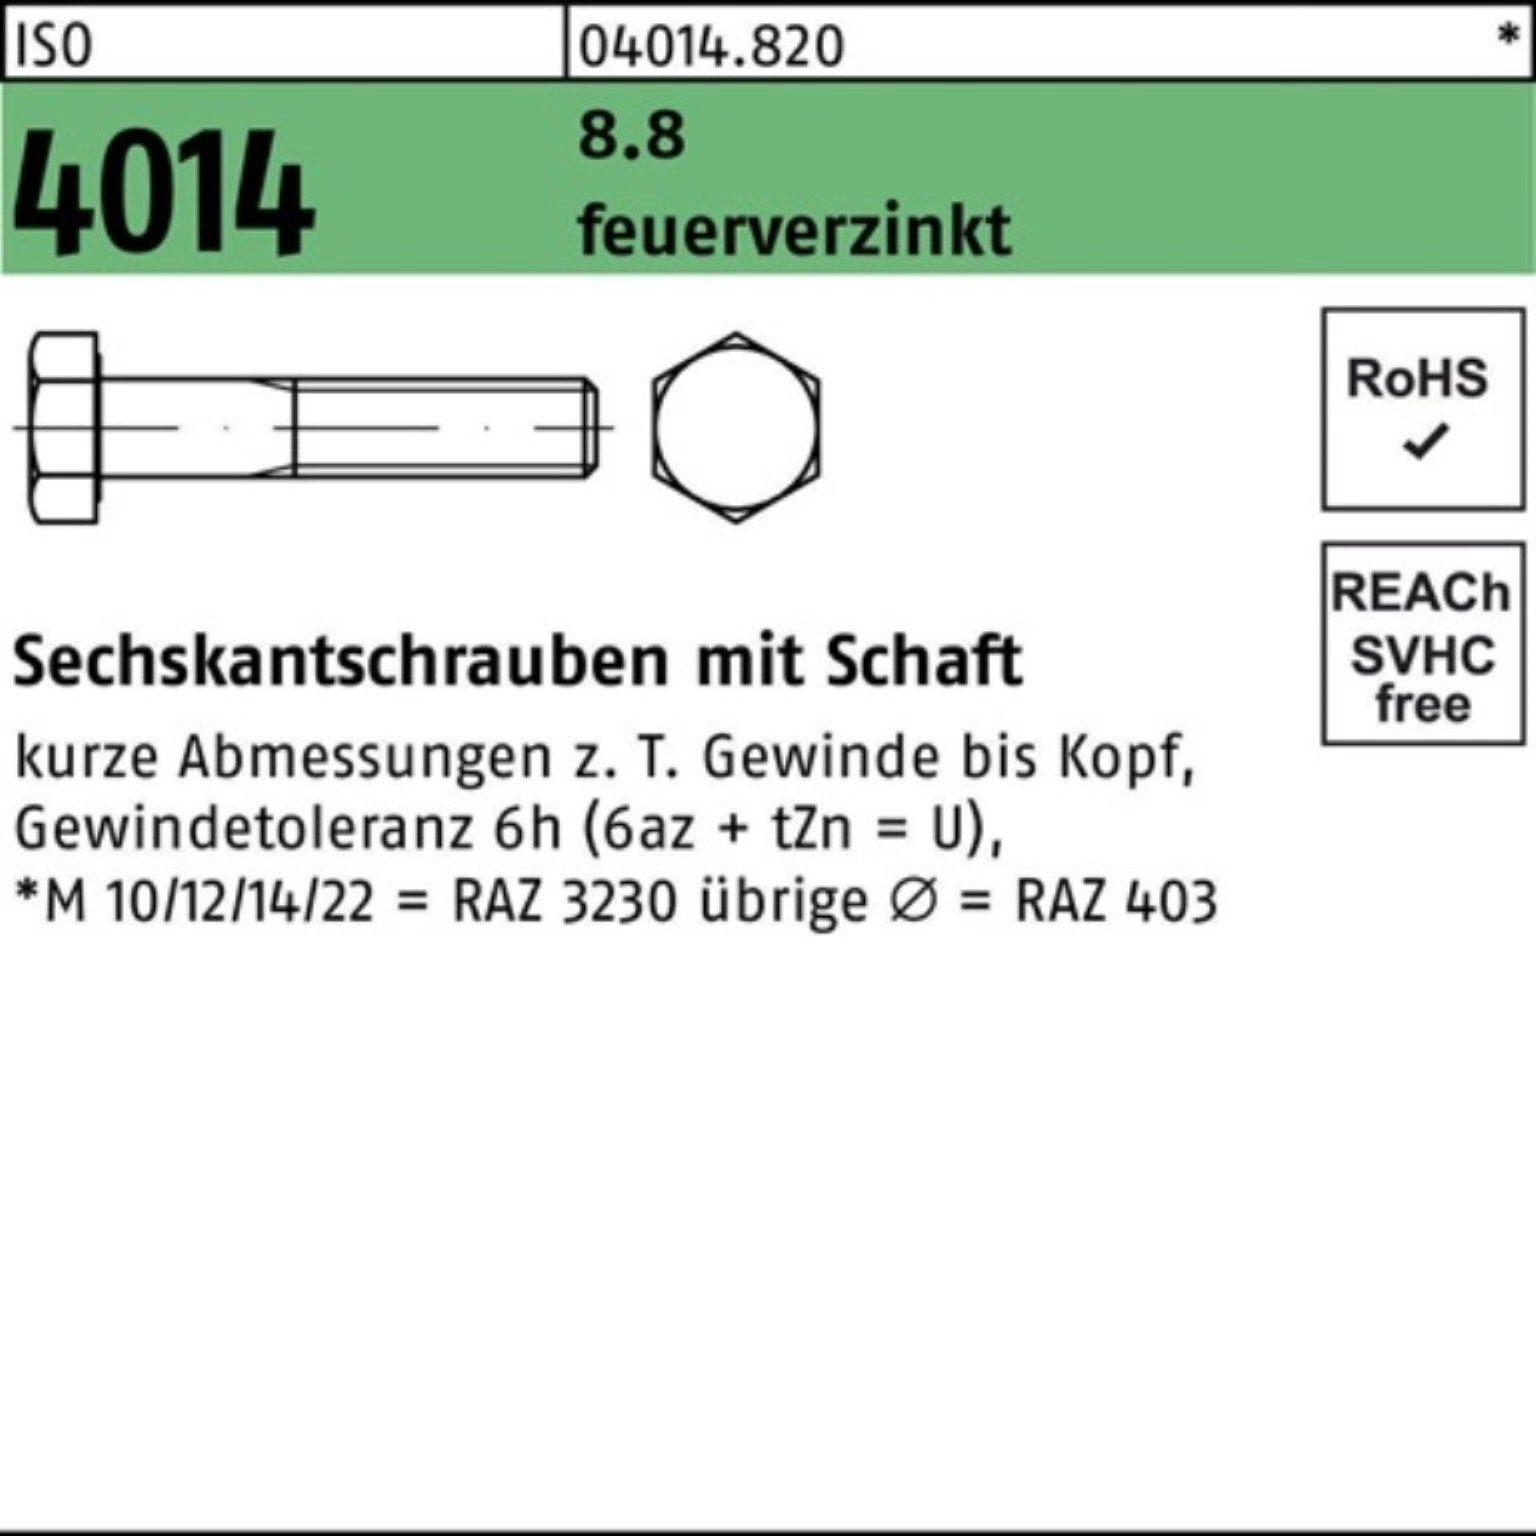 Bufab Sechskantschraube 100er Pack Sechskantschraube ISO 4014 Schaft M24x 100 8.8 feuerverz. 1